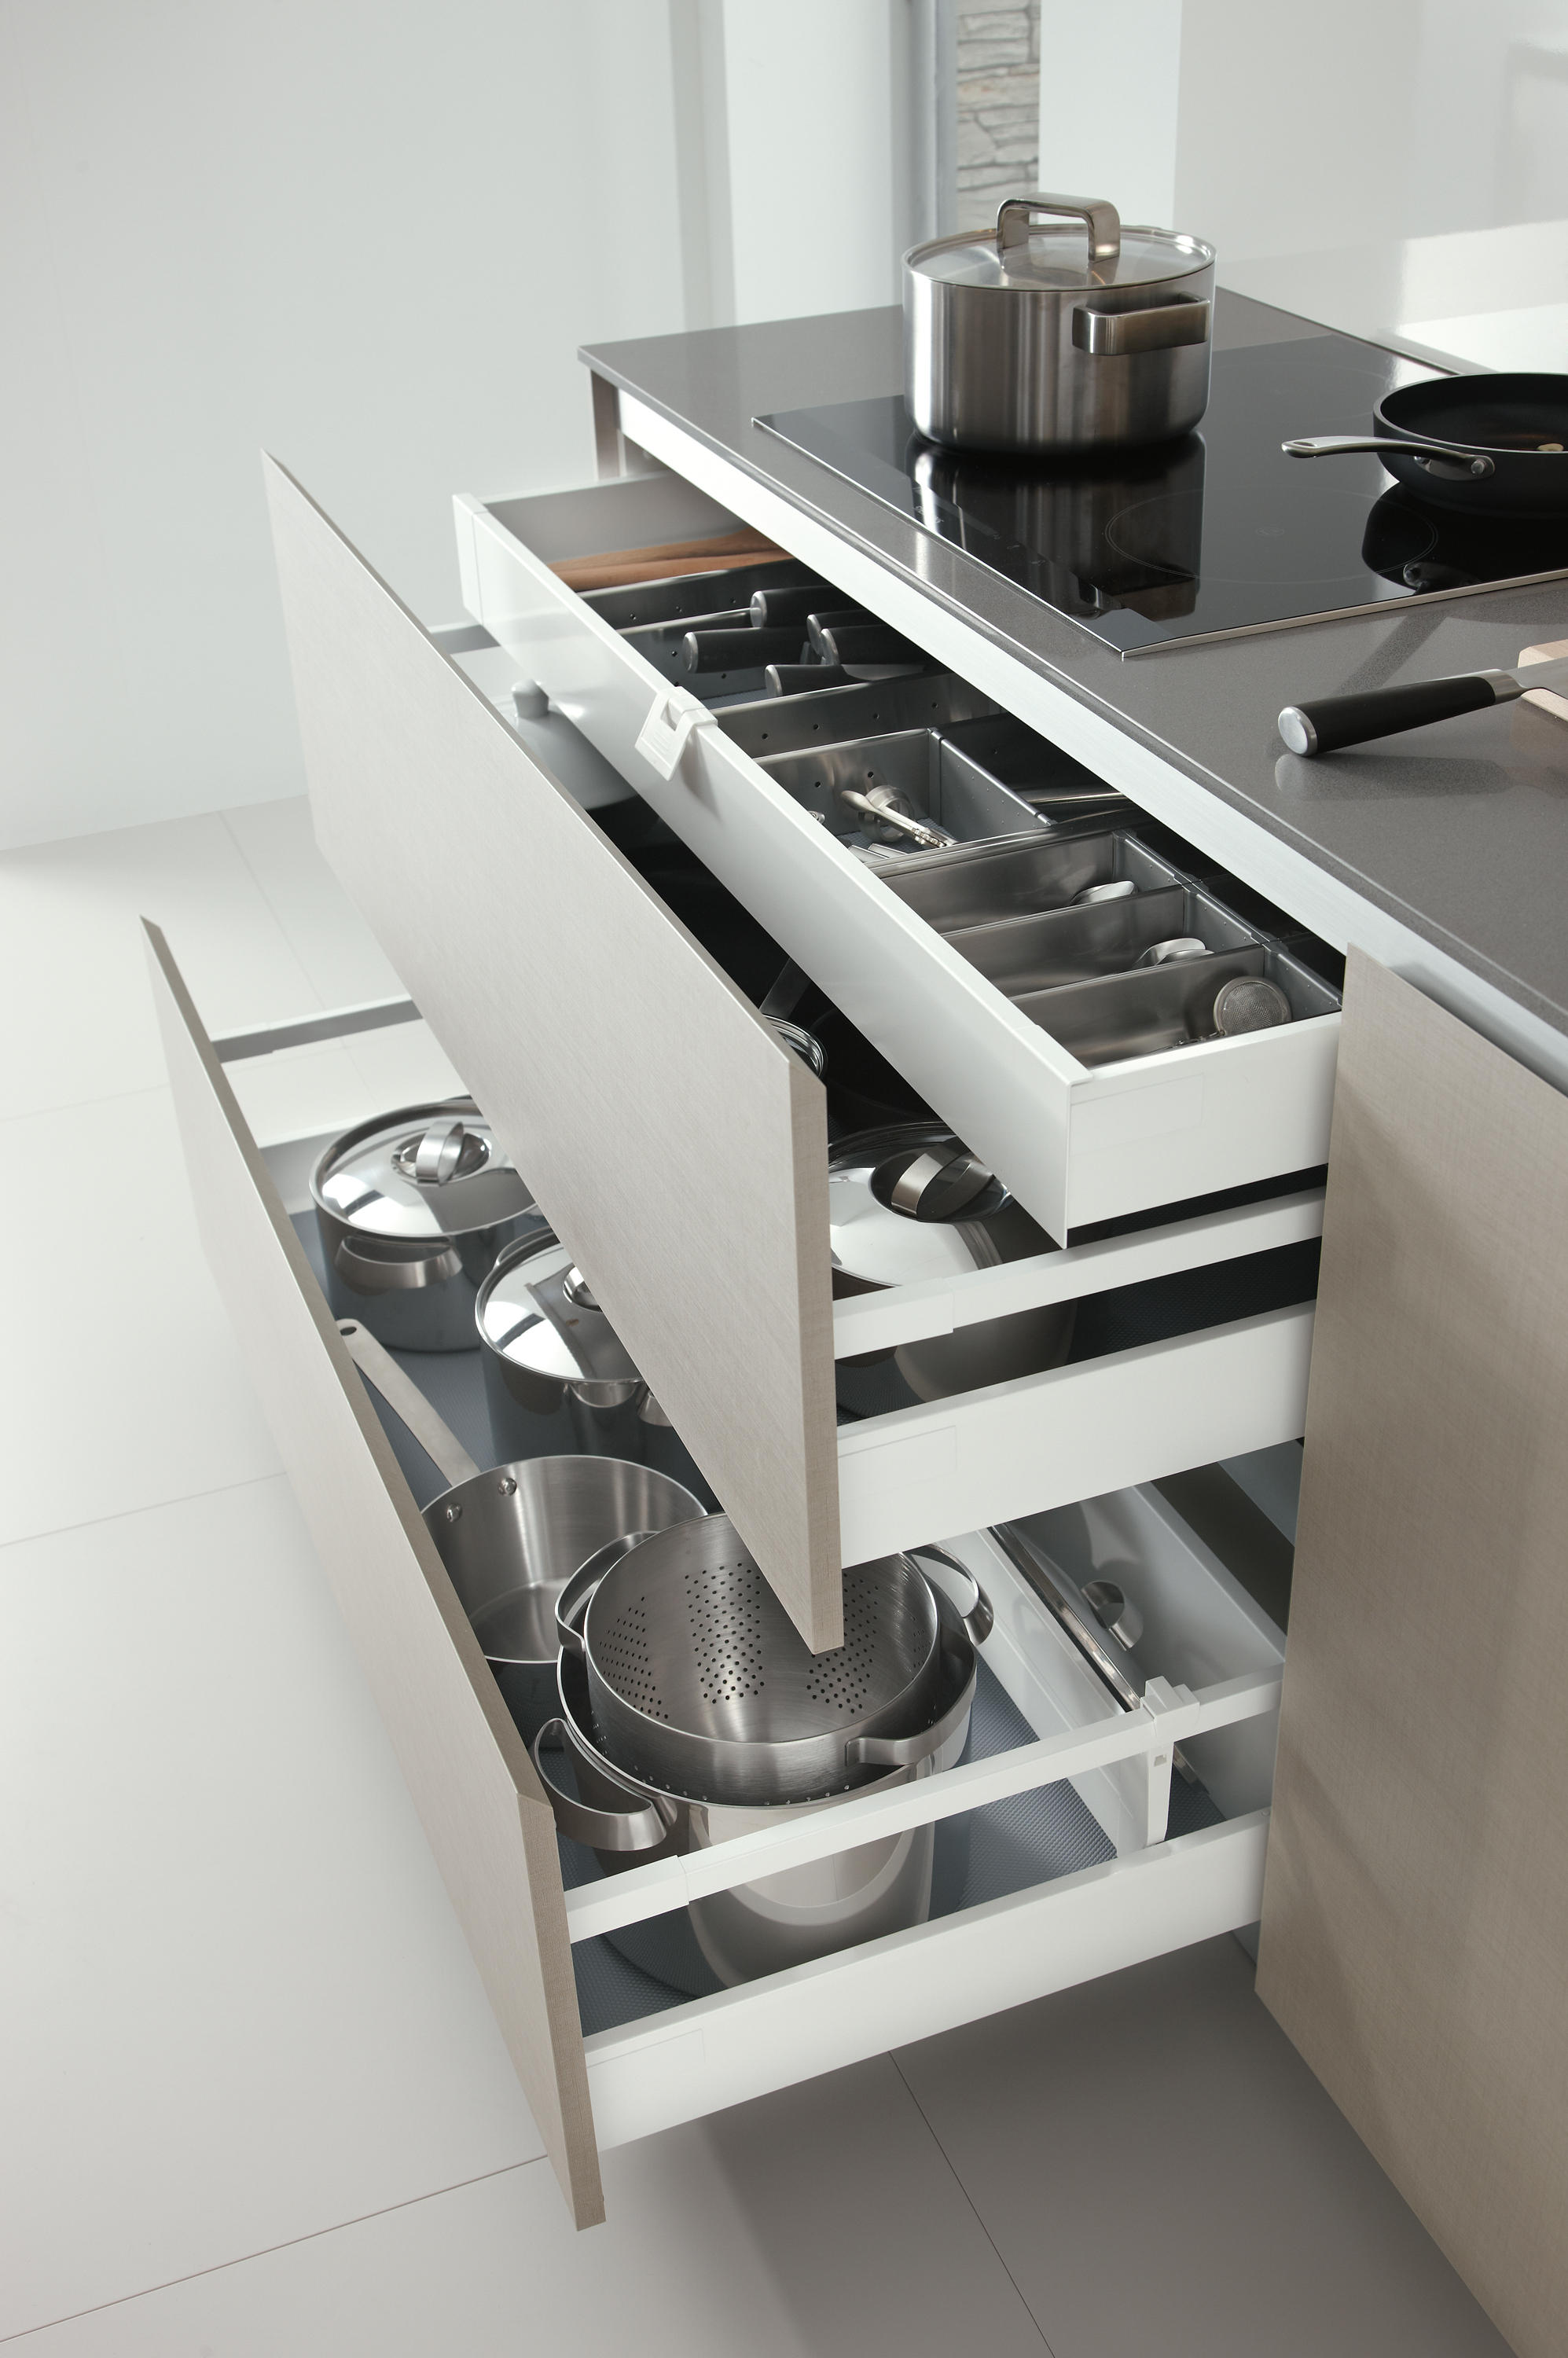 mueble COCINA - Buscar con Google  Kitchen cupboard designs, Interior  design kitchen, Modern kitchen cabinets